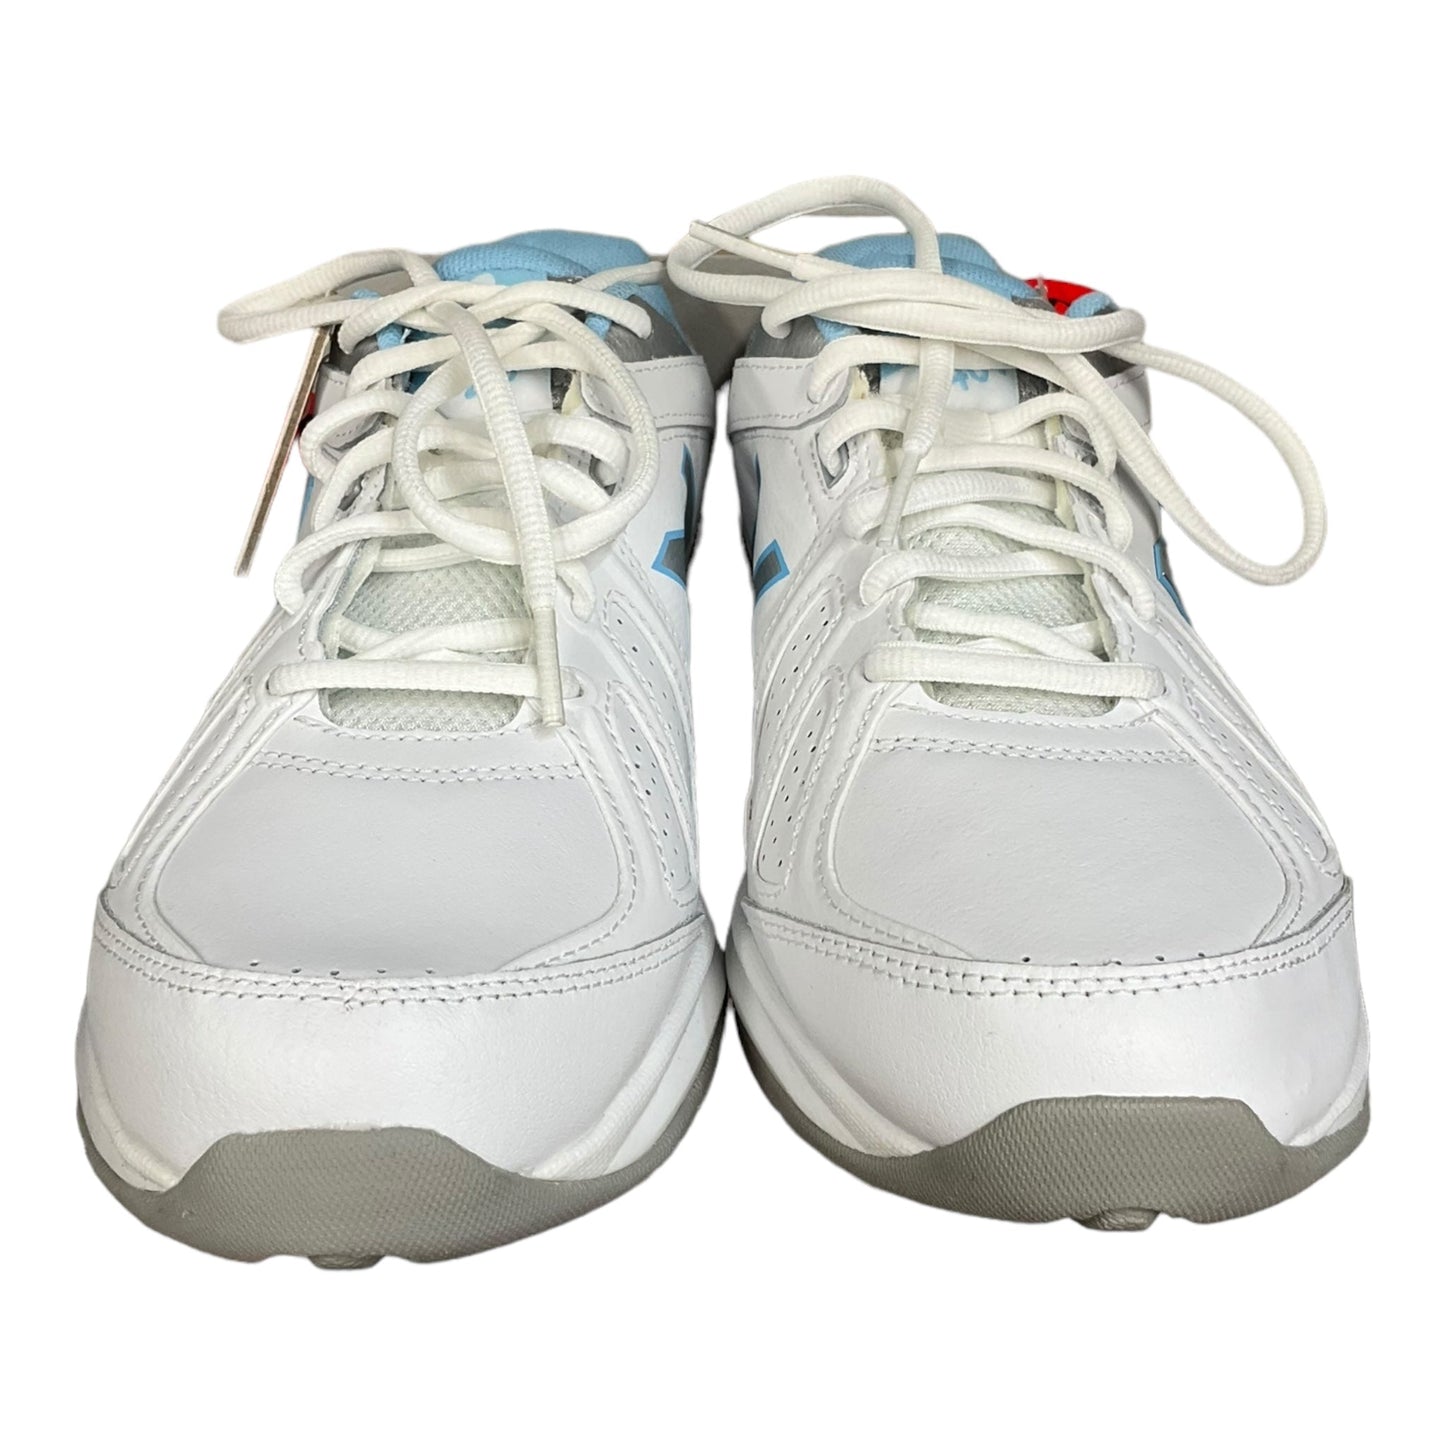 Blue & White Shoes Athletic New Balance, Size 9